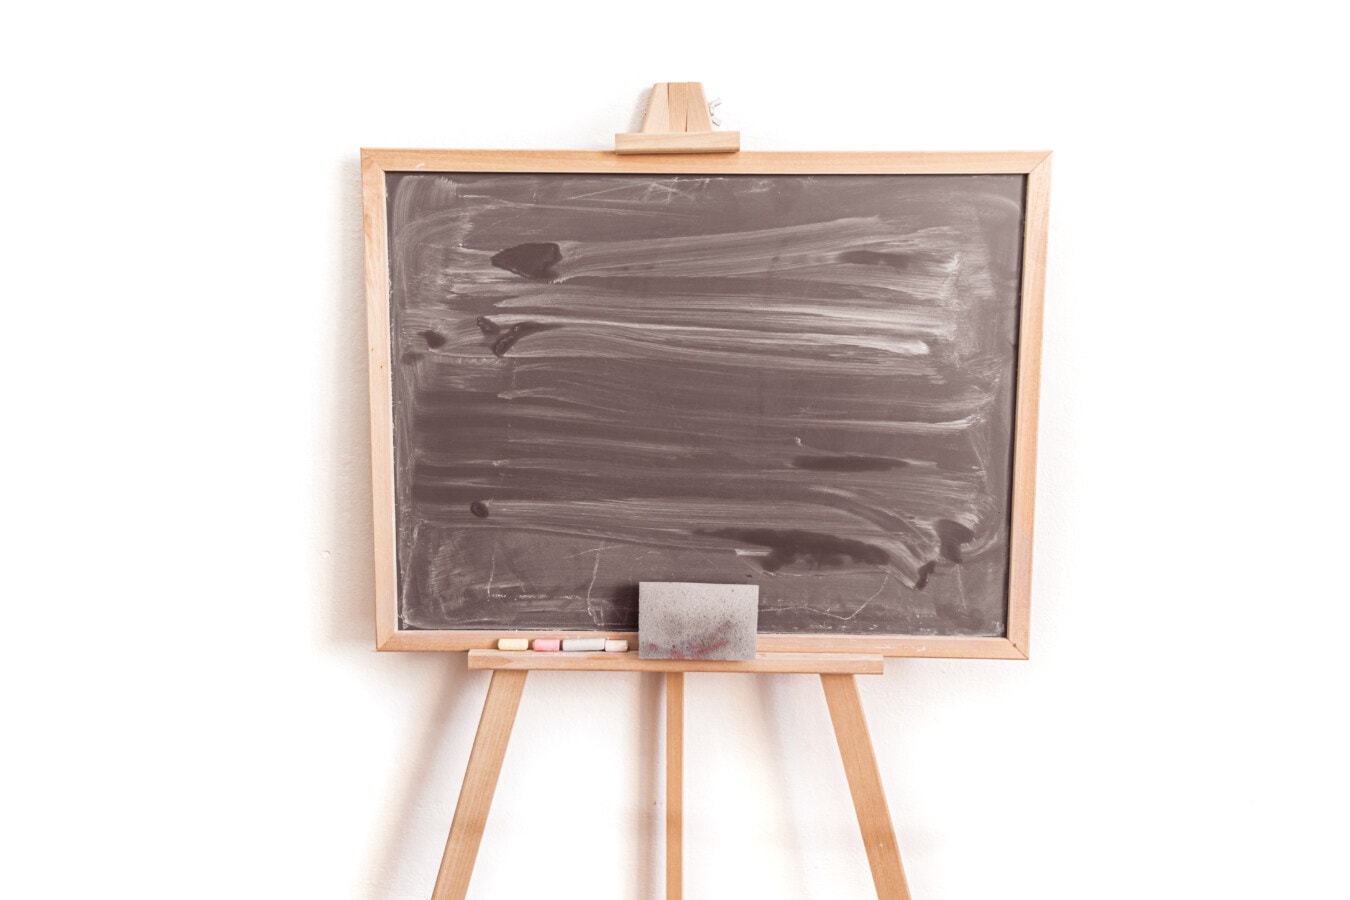 blackboard, wooden, sponge, chalk, empty, wood, retro, dirty, old, carpentry